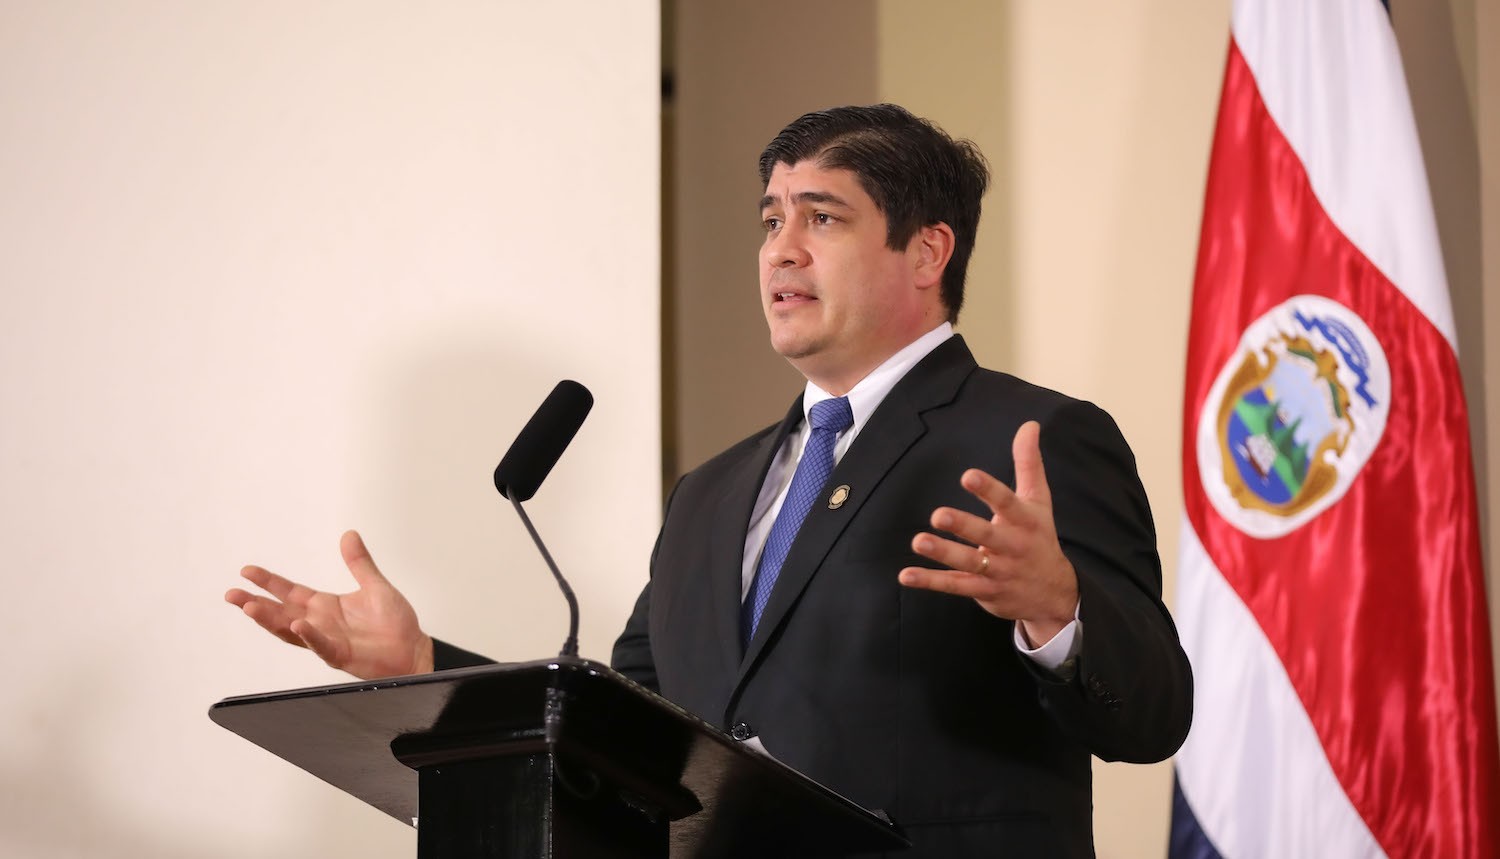 Presidente Alvarado tras rechazo de presupuesto: “El Gobierno no ha renunciado a seguir zocándose la faja”